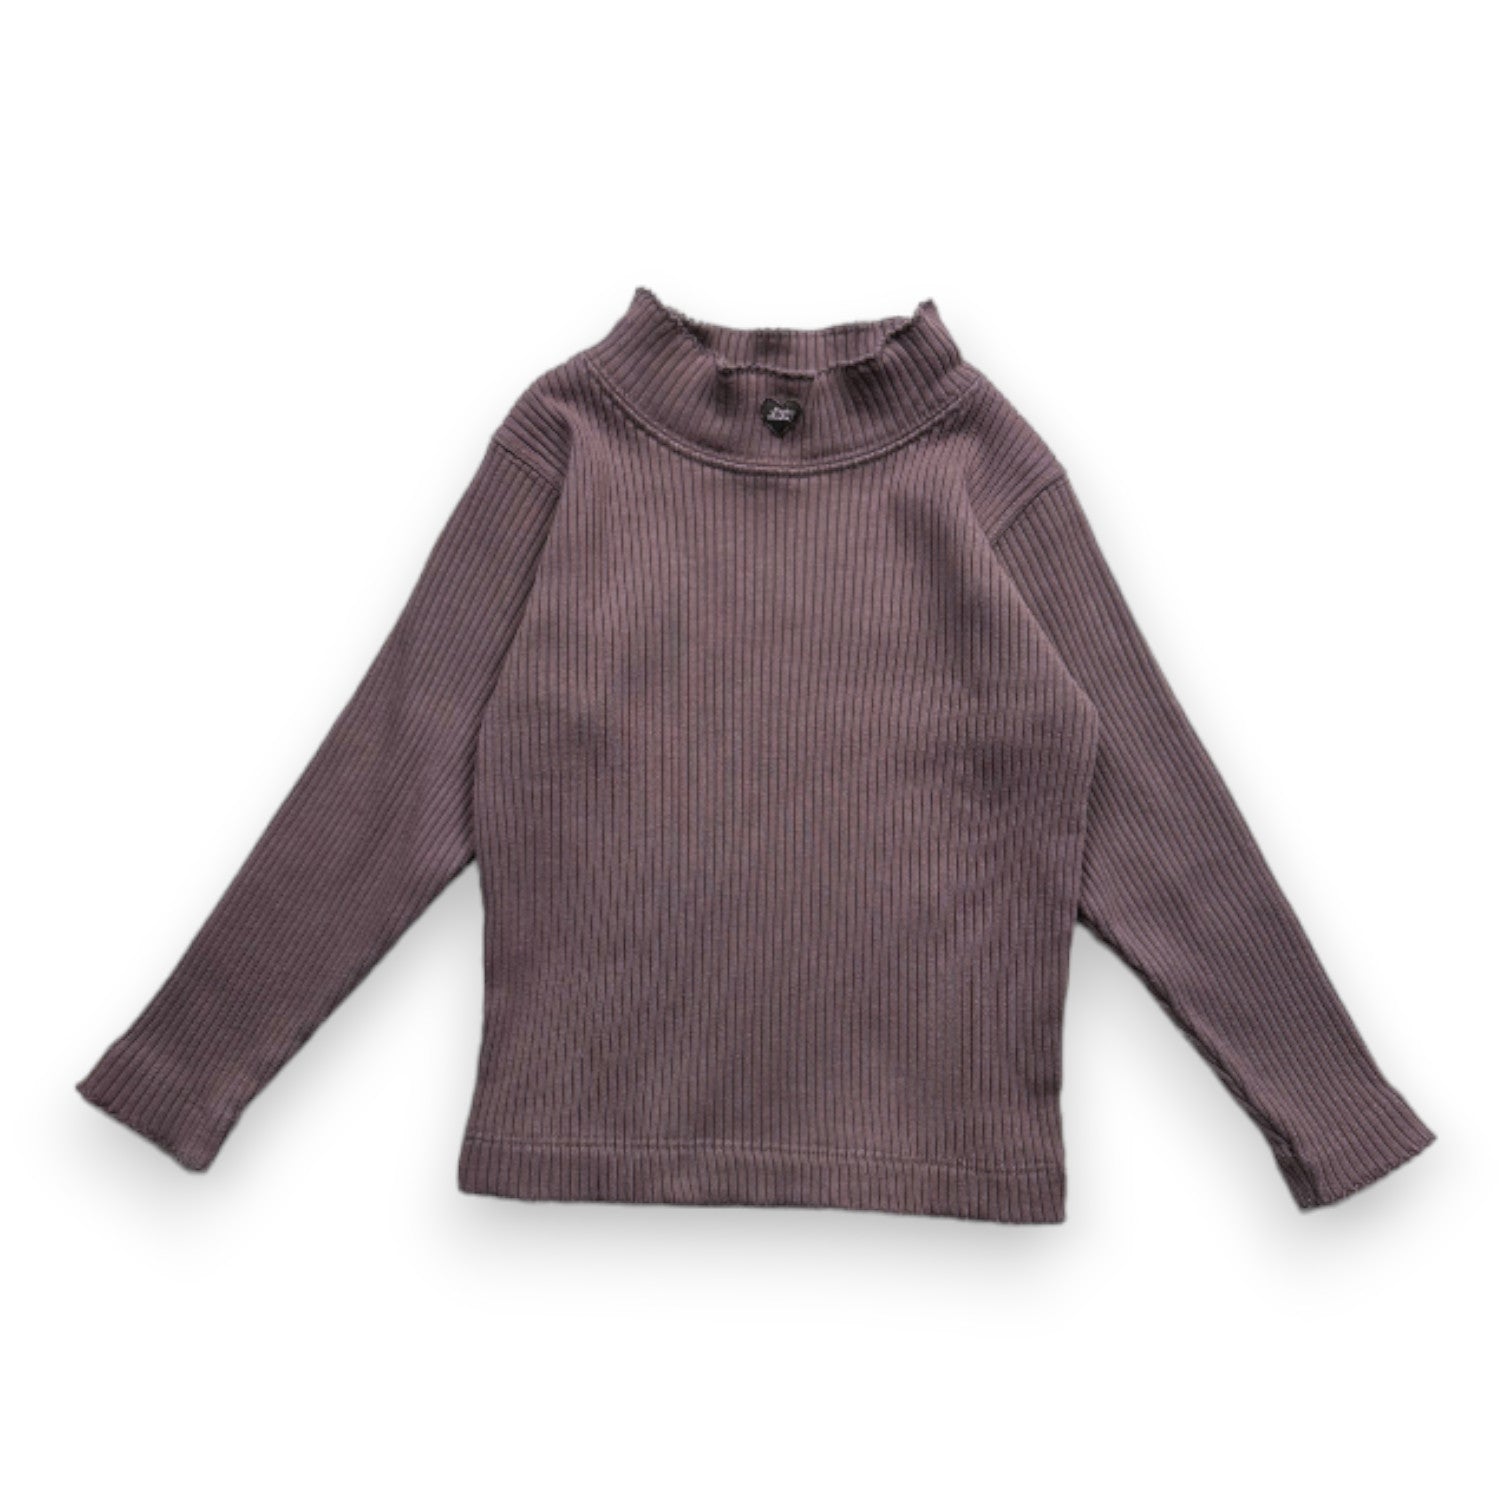 LILI GAUFRETTE - t-shirt à manches longues violet - 2 ans